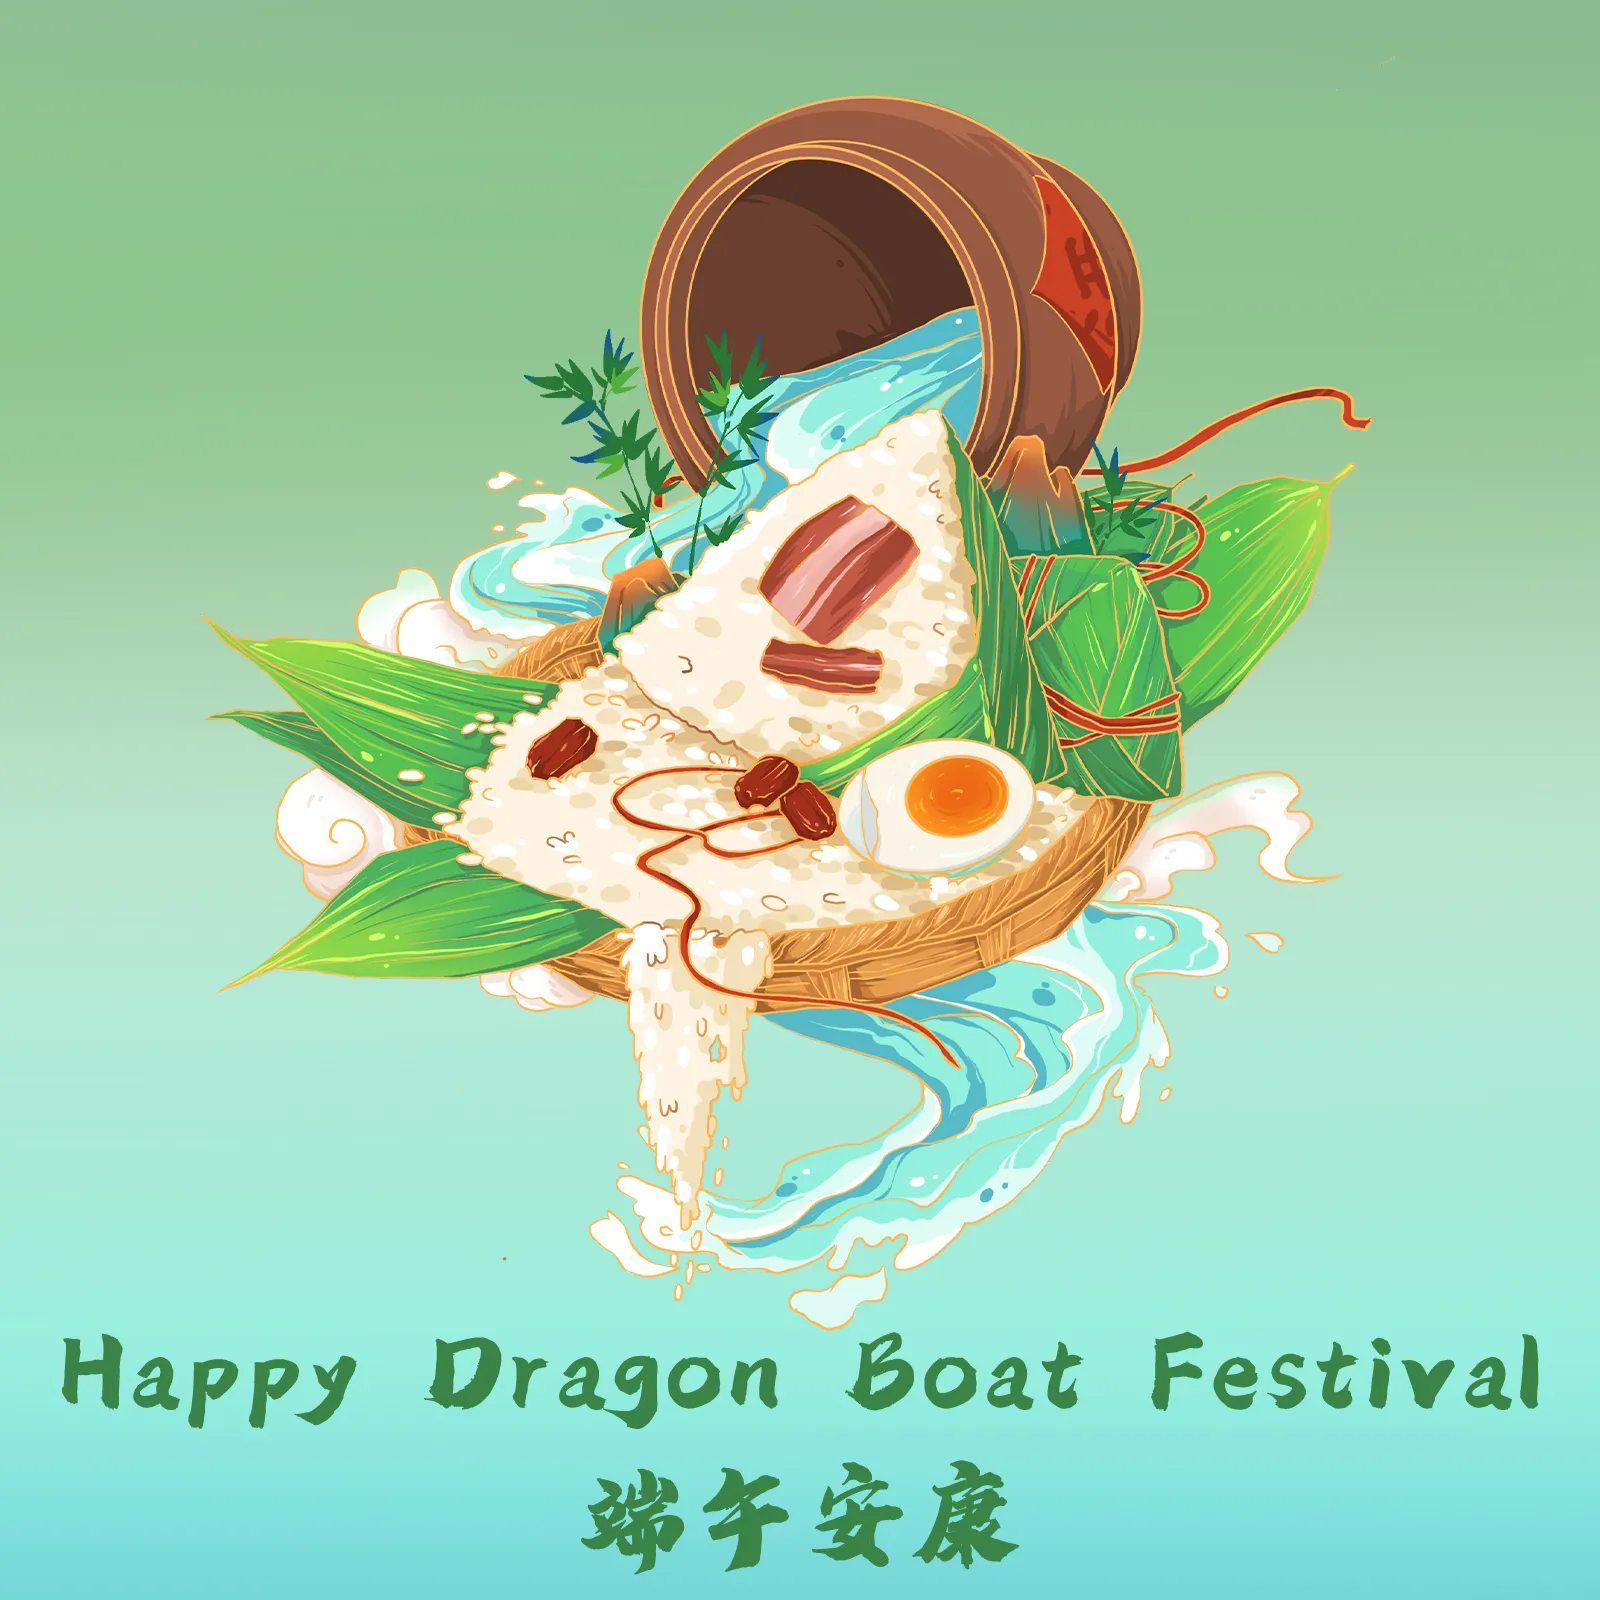 CNLonQcom Supports Dragon Boat Festival Activities